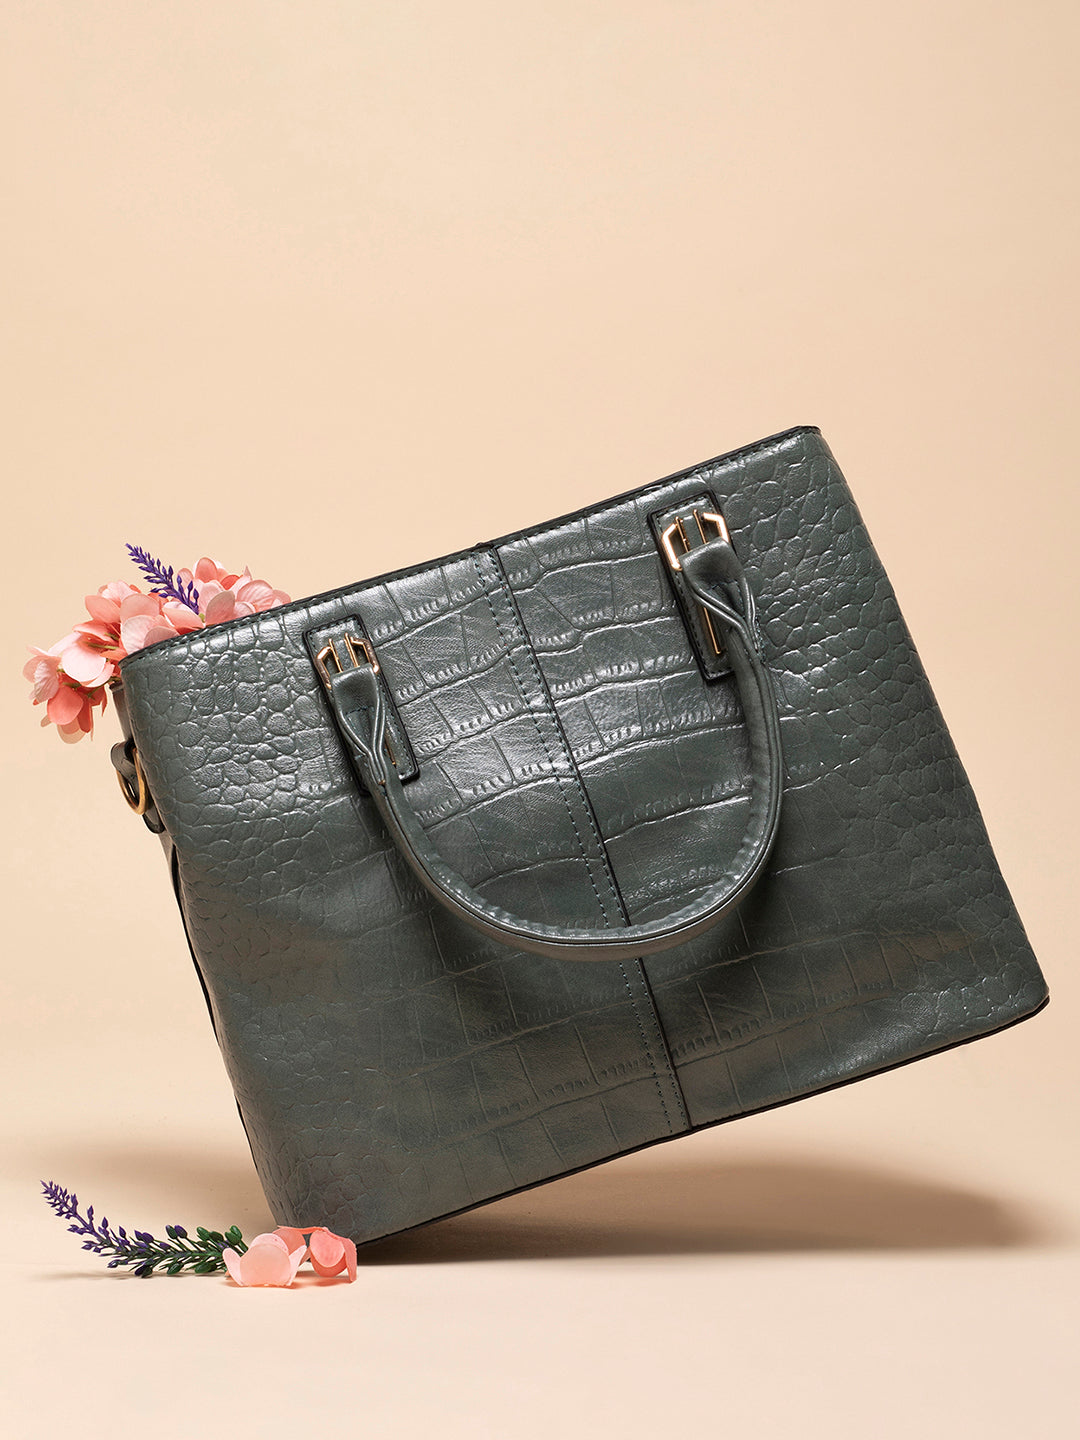 Rosemarie Green Handbag